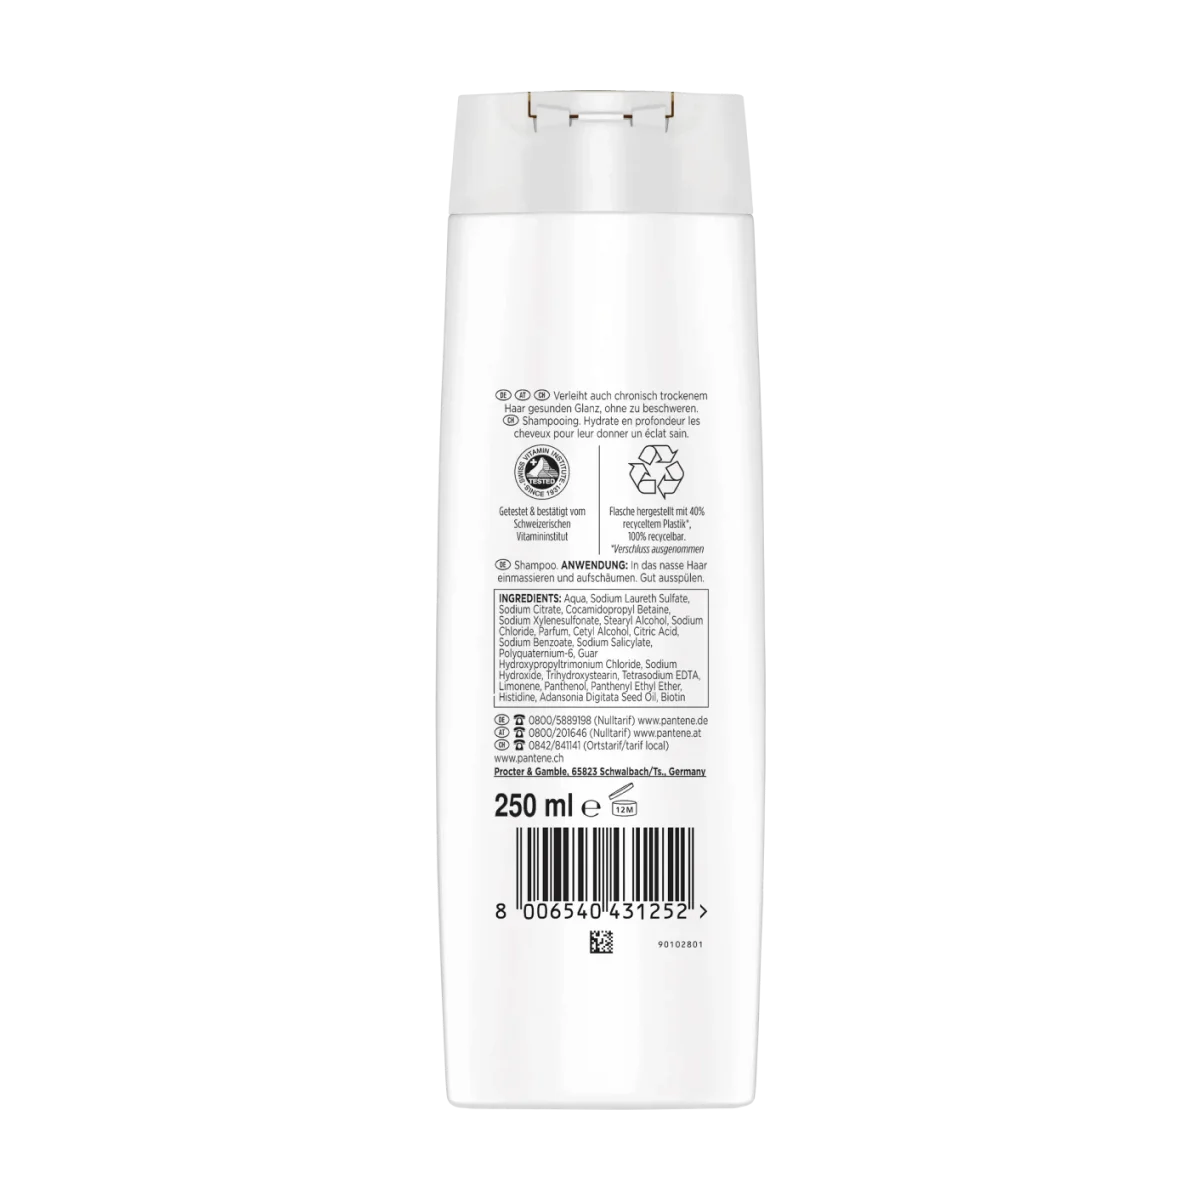 PANTENE PRO-V Shampoo miracles Hydra Glow, 250 ml